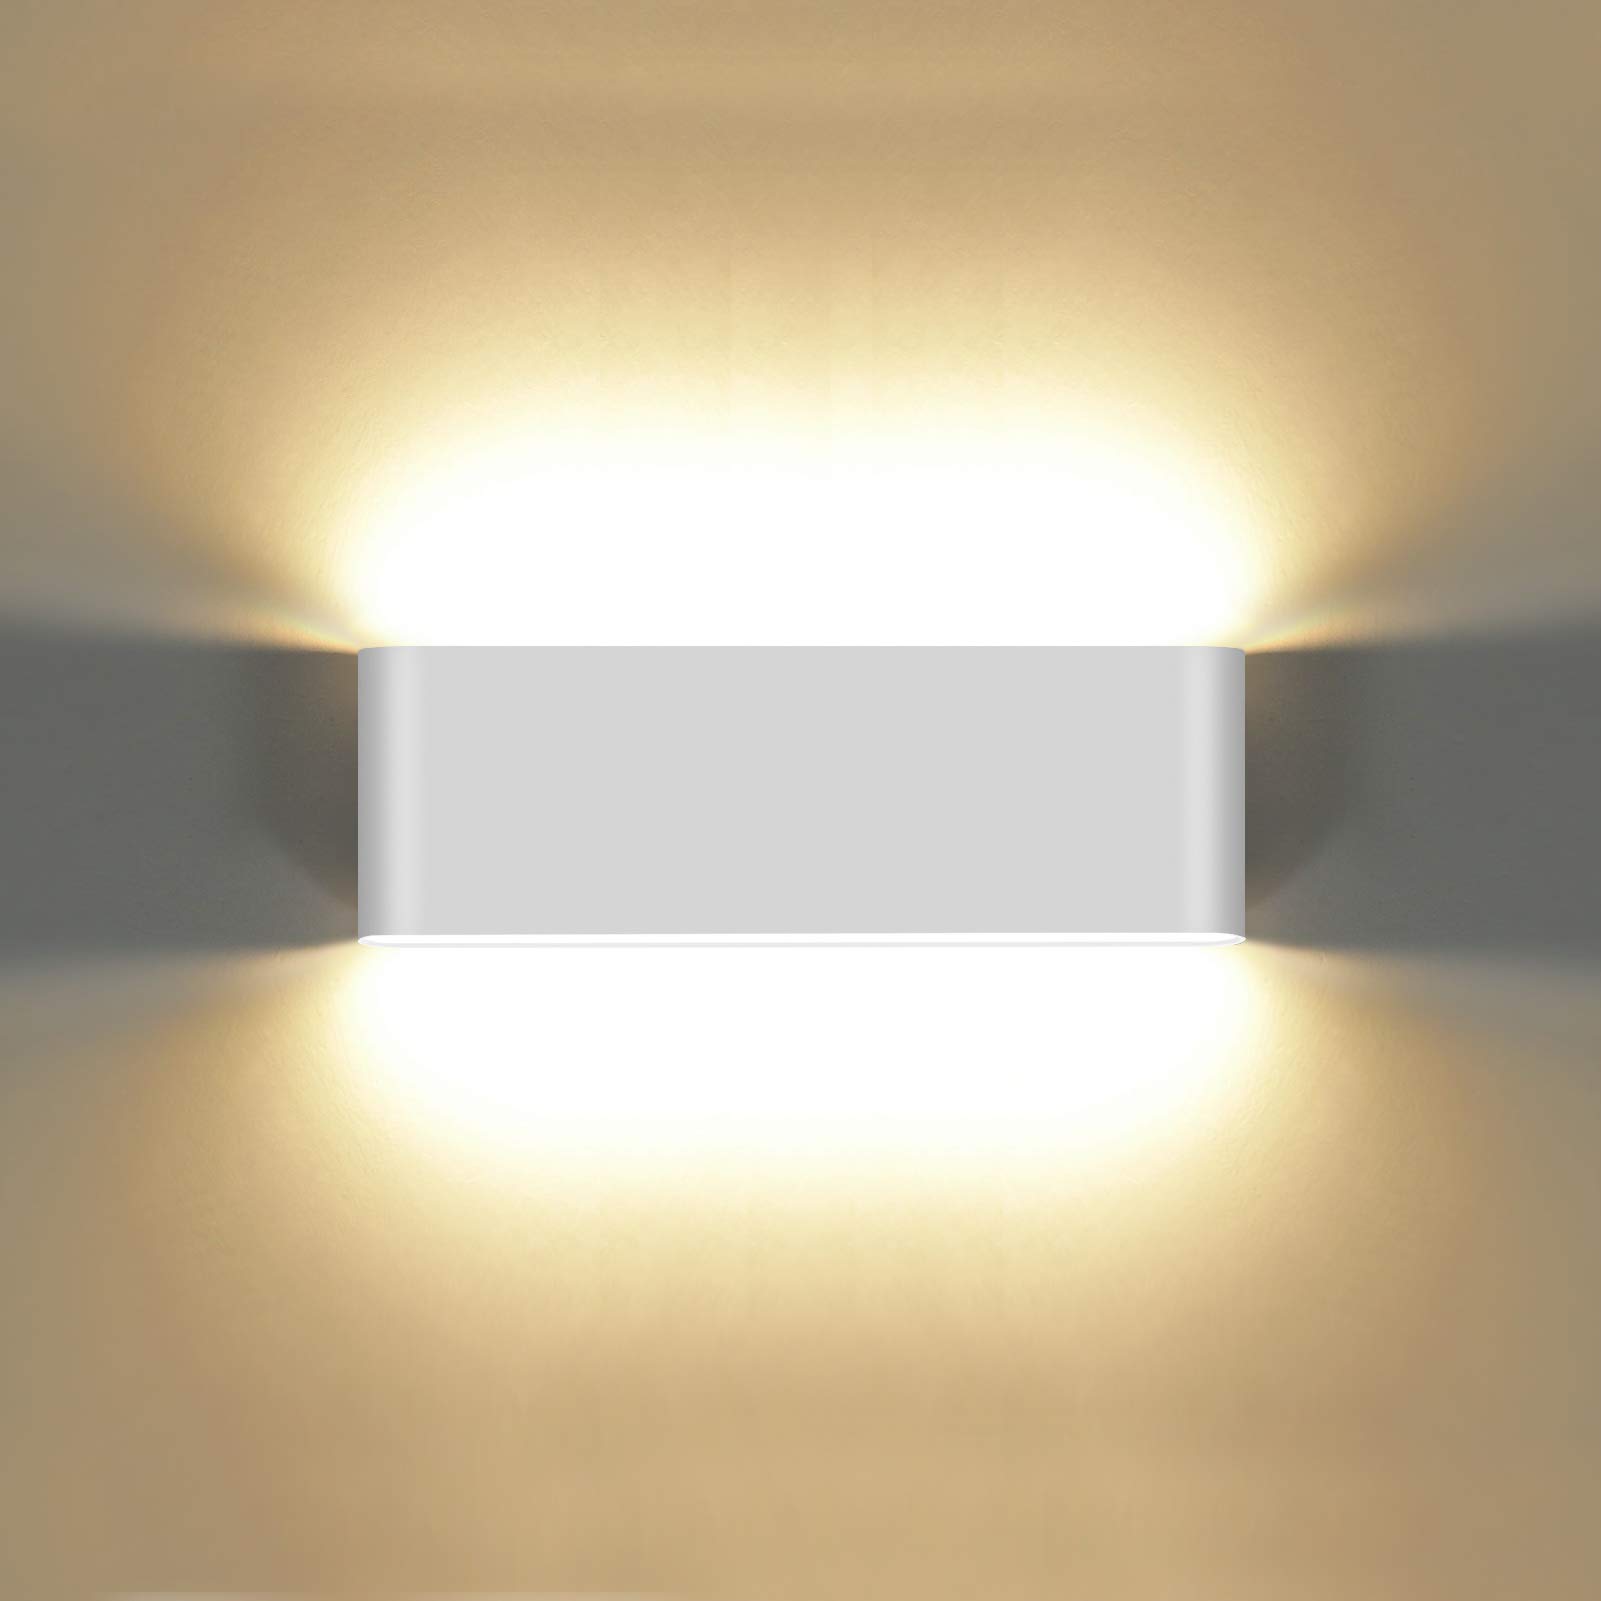 KAWELL 20W Modern Wandlampe LED Wandleuchte Up Down Aluminium Wandbeleuchtung Wasserdicht IP65 Innen Außen für Schlafzimmer Badezimmer Wohnzimmer Flur Treppen Korridor, Weiß 3000K